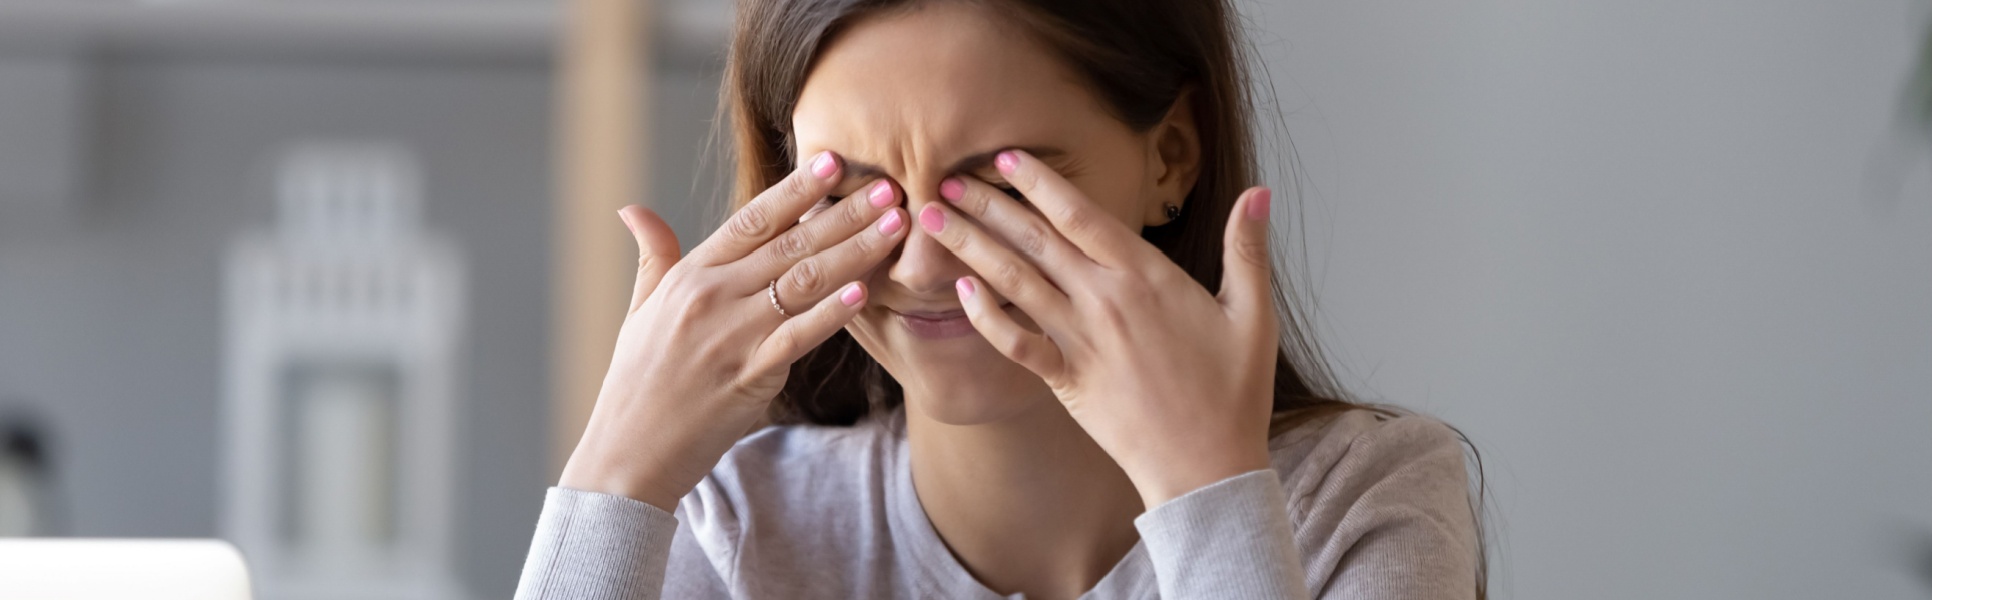 Alergiczne zapalenie spojówek — czym jest? Objawy, przyczyny, diagnostyka i leczenie